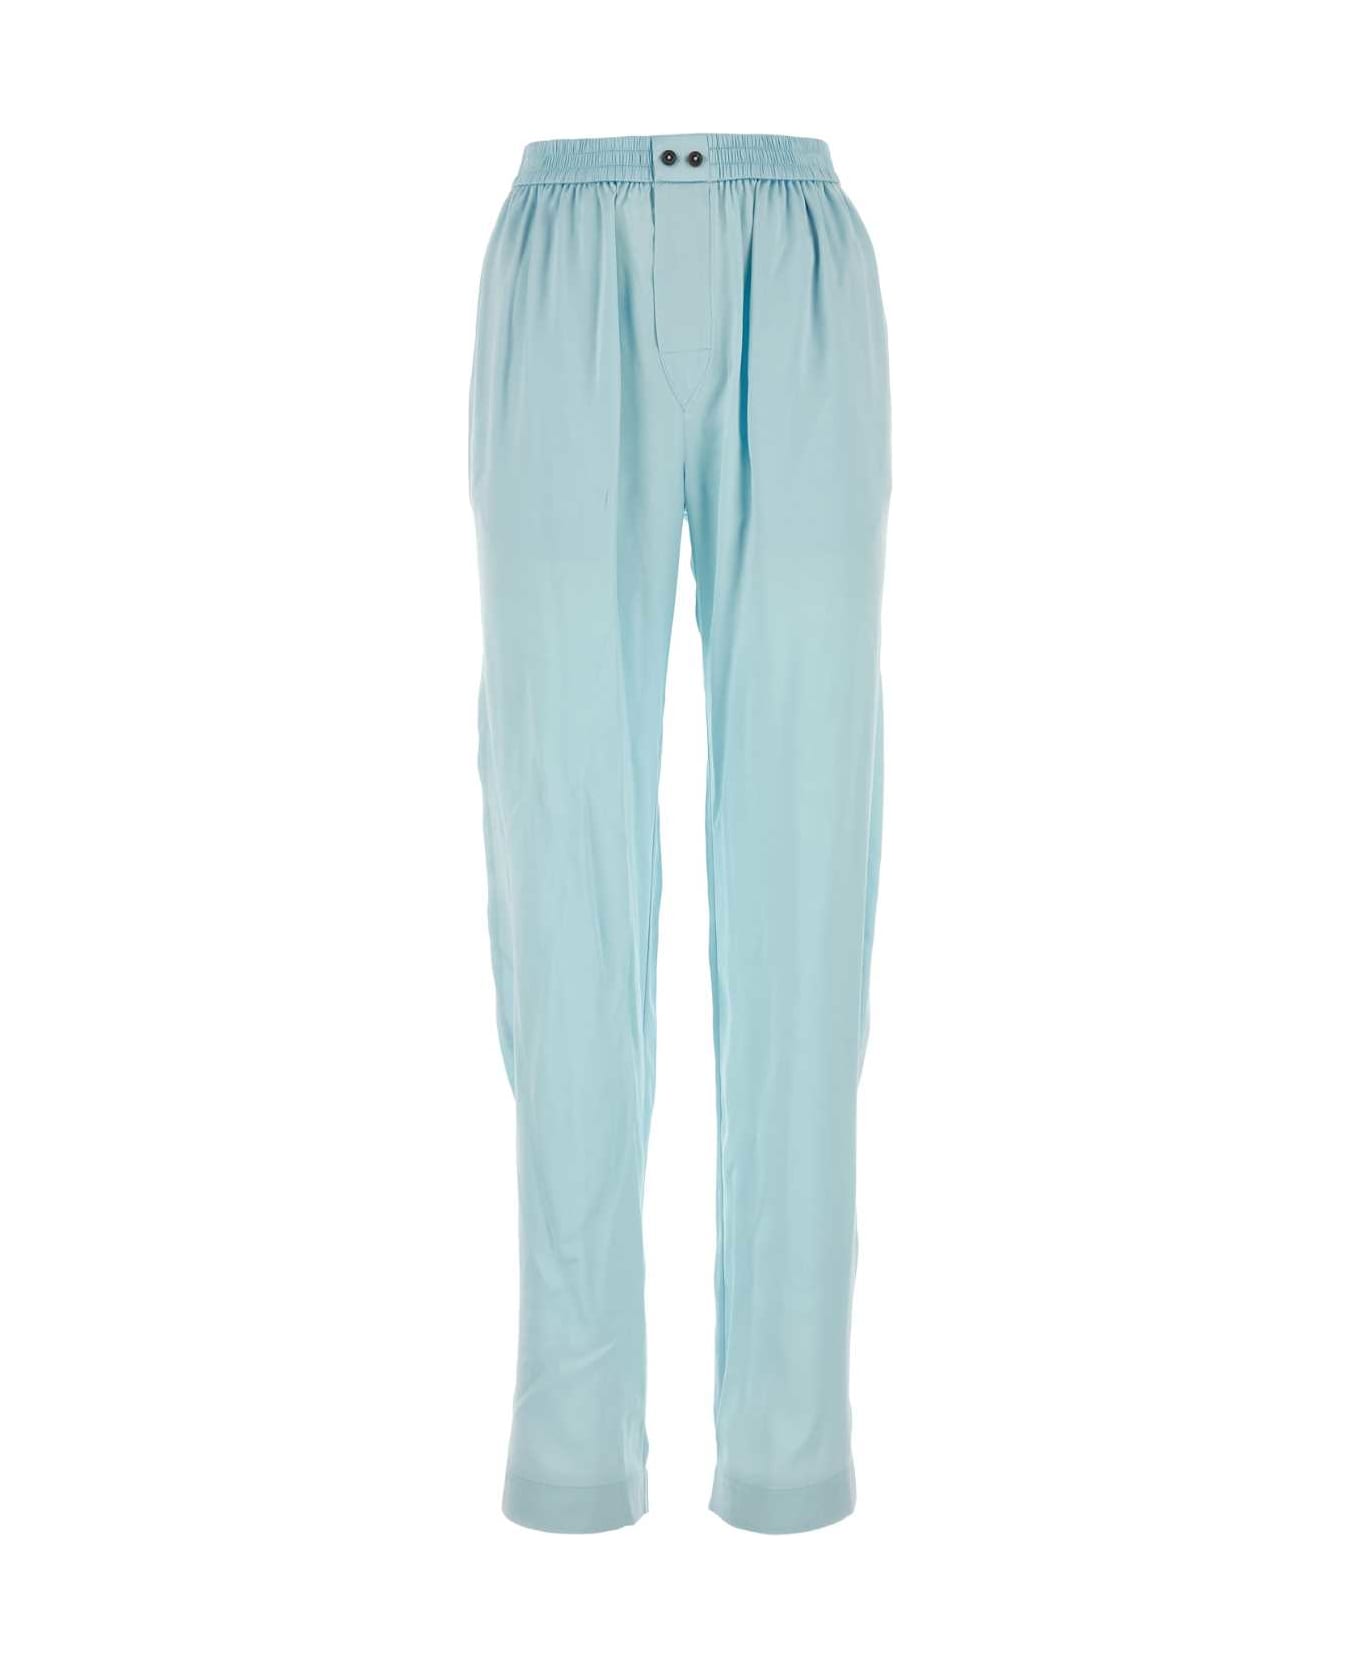 Alexander Wang Light Blue Satin Pyjama Pant - SHINEBLUE